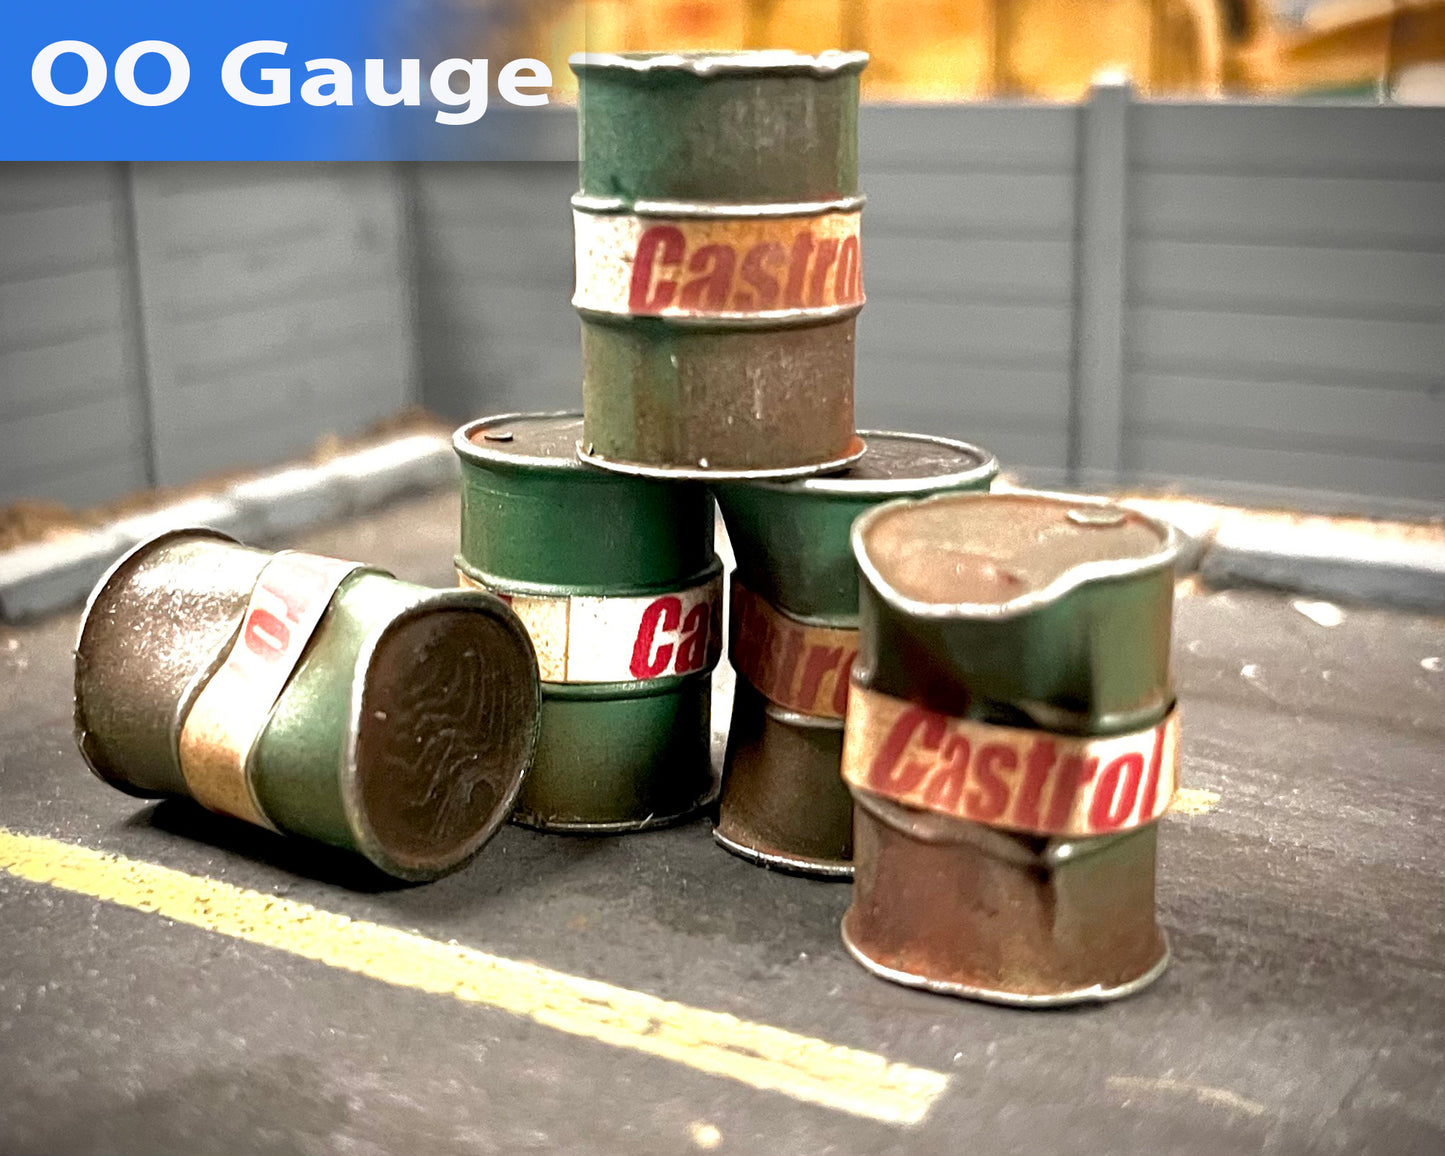 Castrol Oil Drums - Premium Weathered - OO Gauge